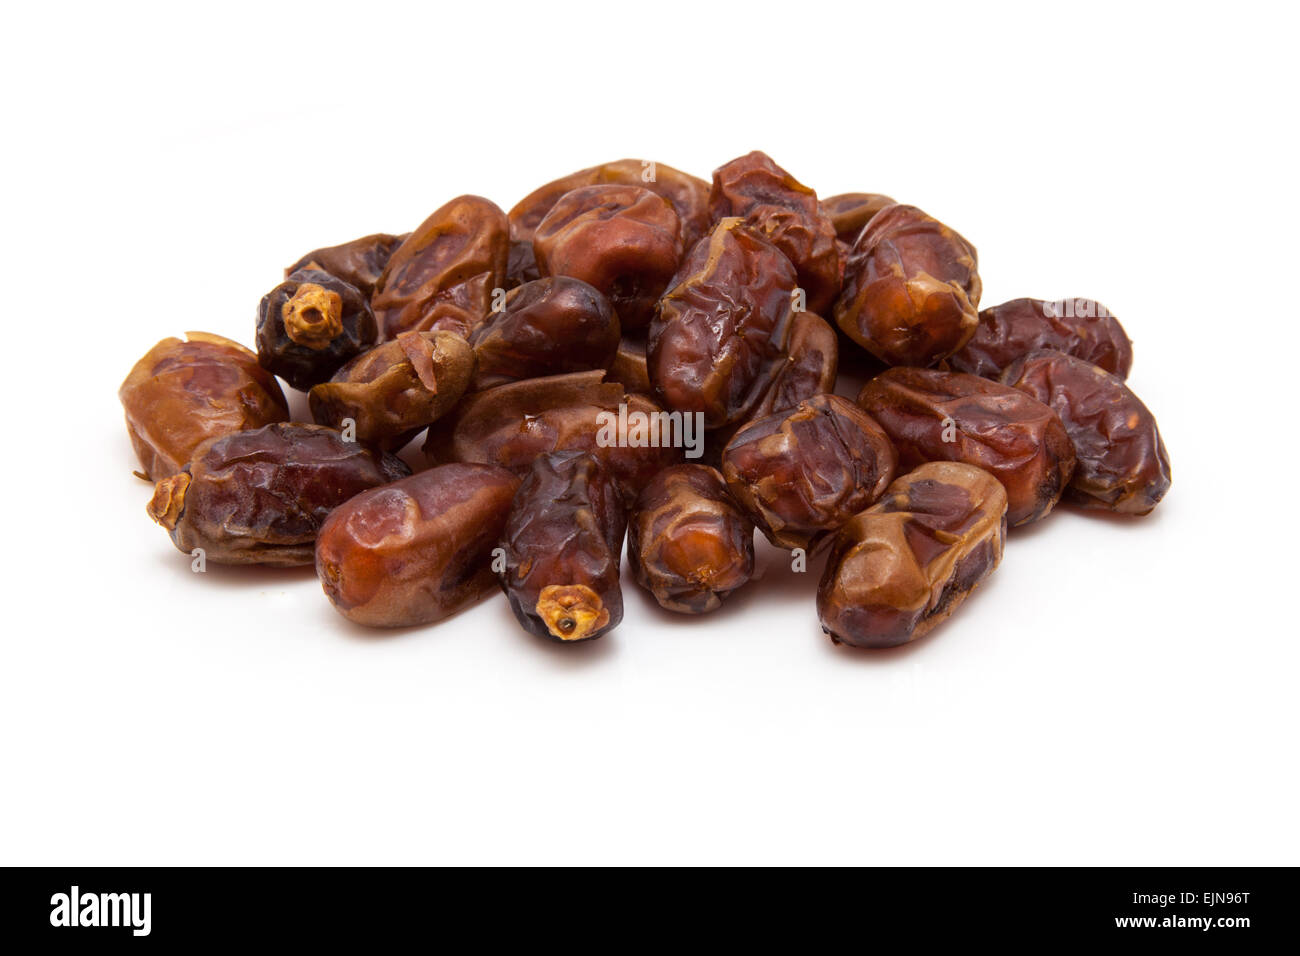 Halawi dates isolated on a white background. Halawi dates originate ...